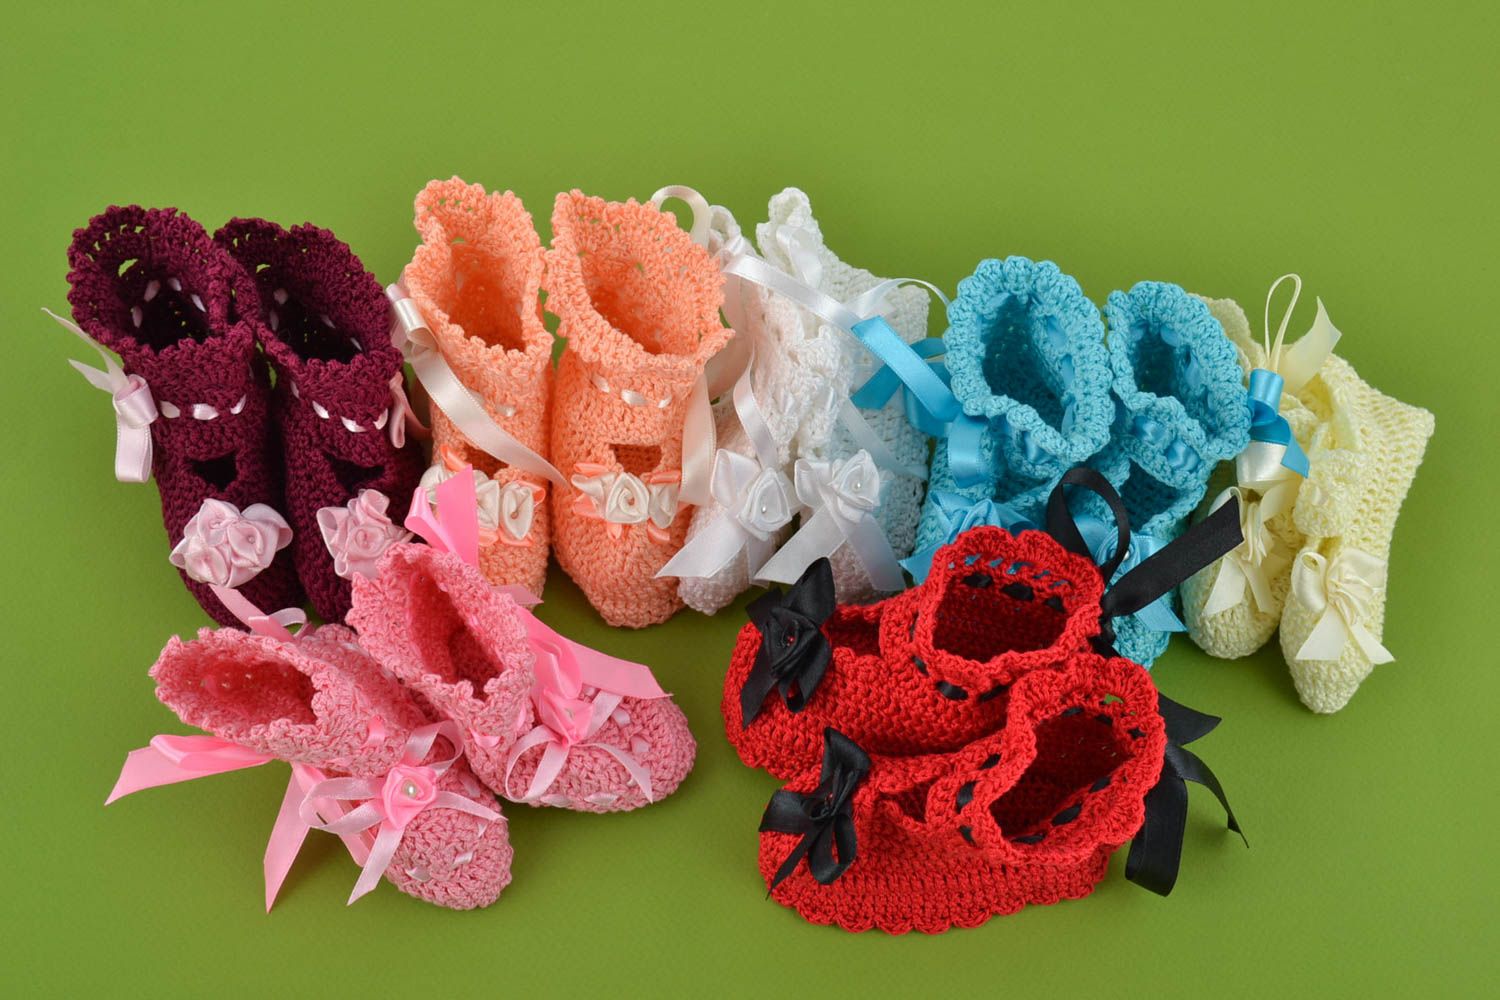 Lot de chaussons de bébé tricotés en coton avec rubans faits main 7 paires photo 1